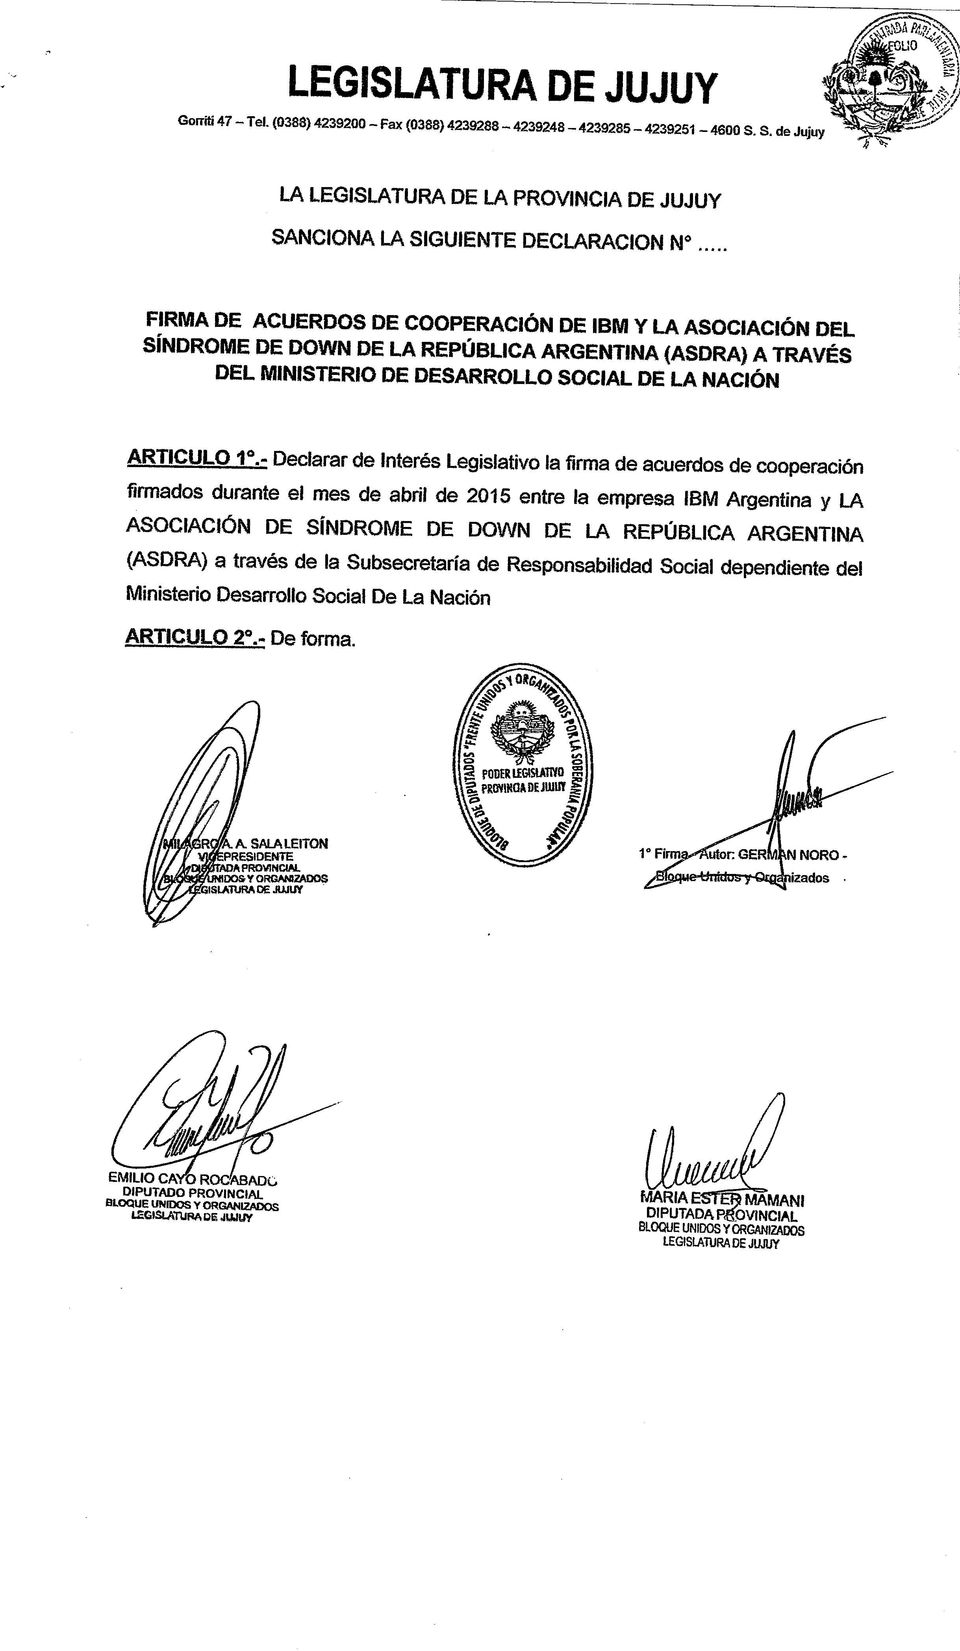 A TRAVÉS DEL MINISTERIO DE DESARROLLO SOCIAL DE LA NACIÓN ARTICULO 1.